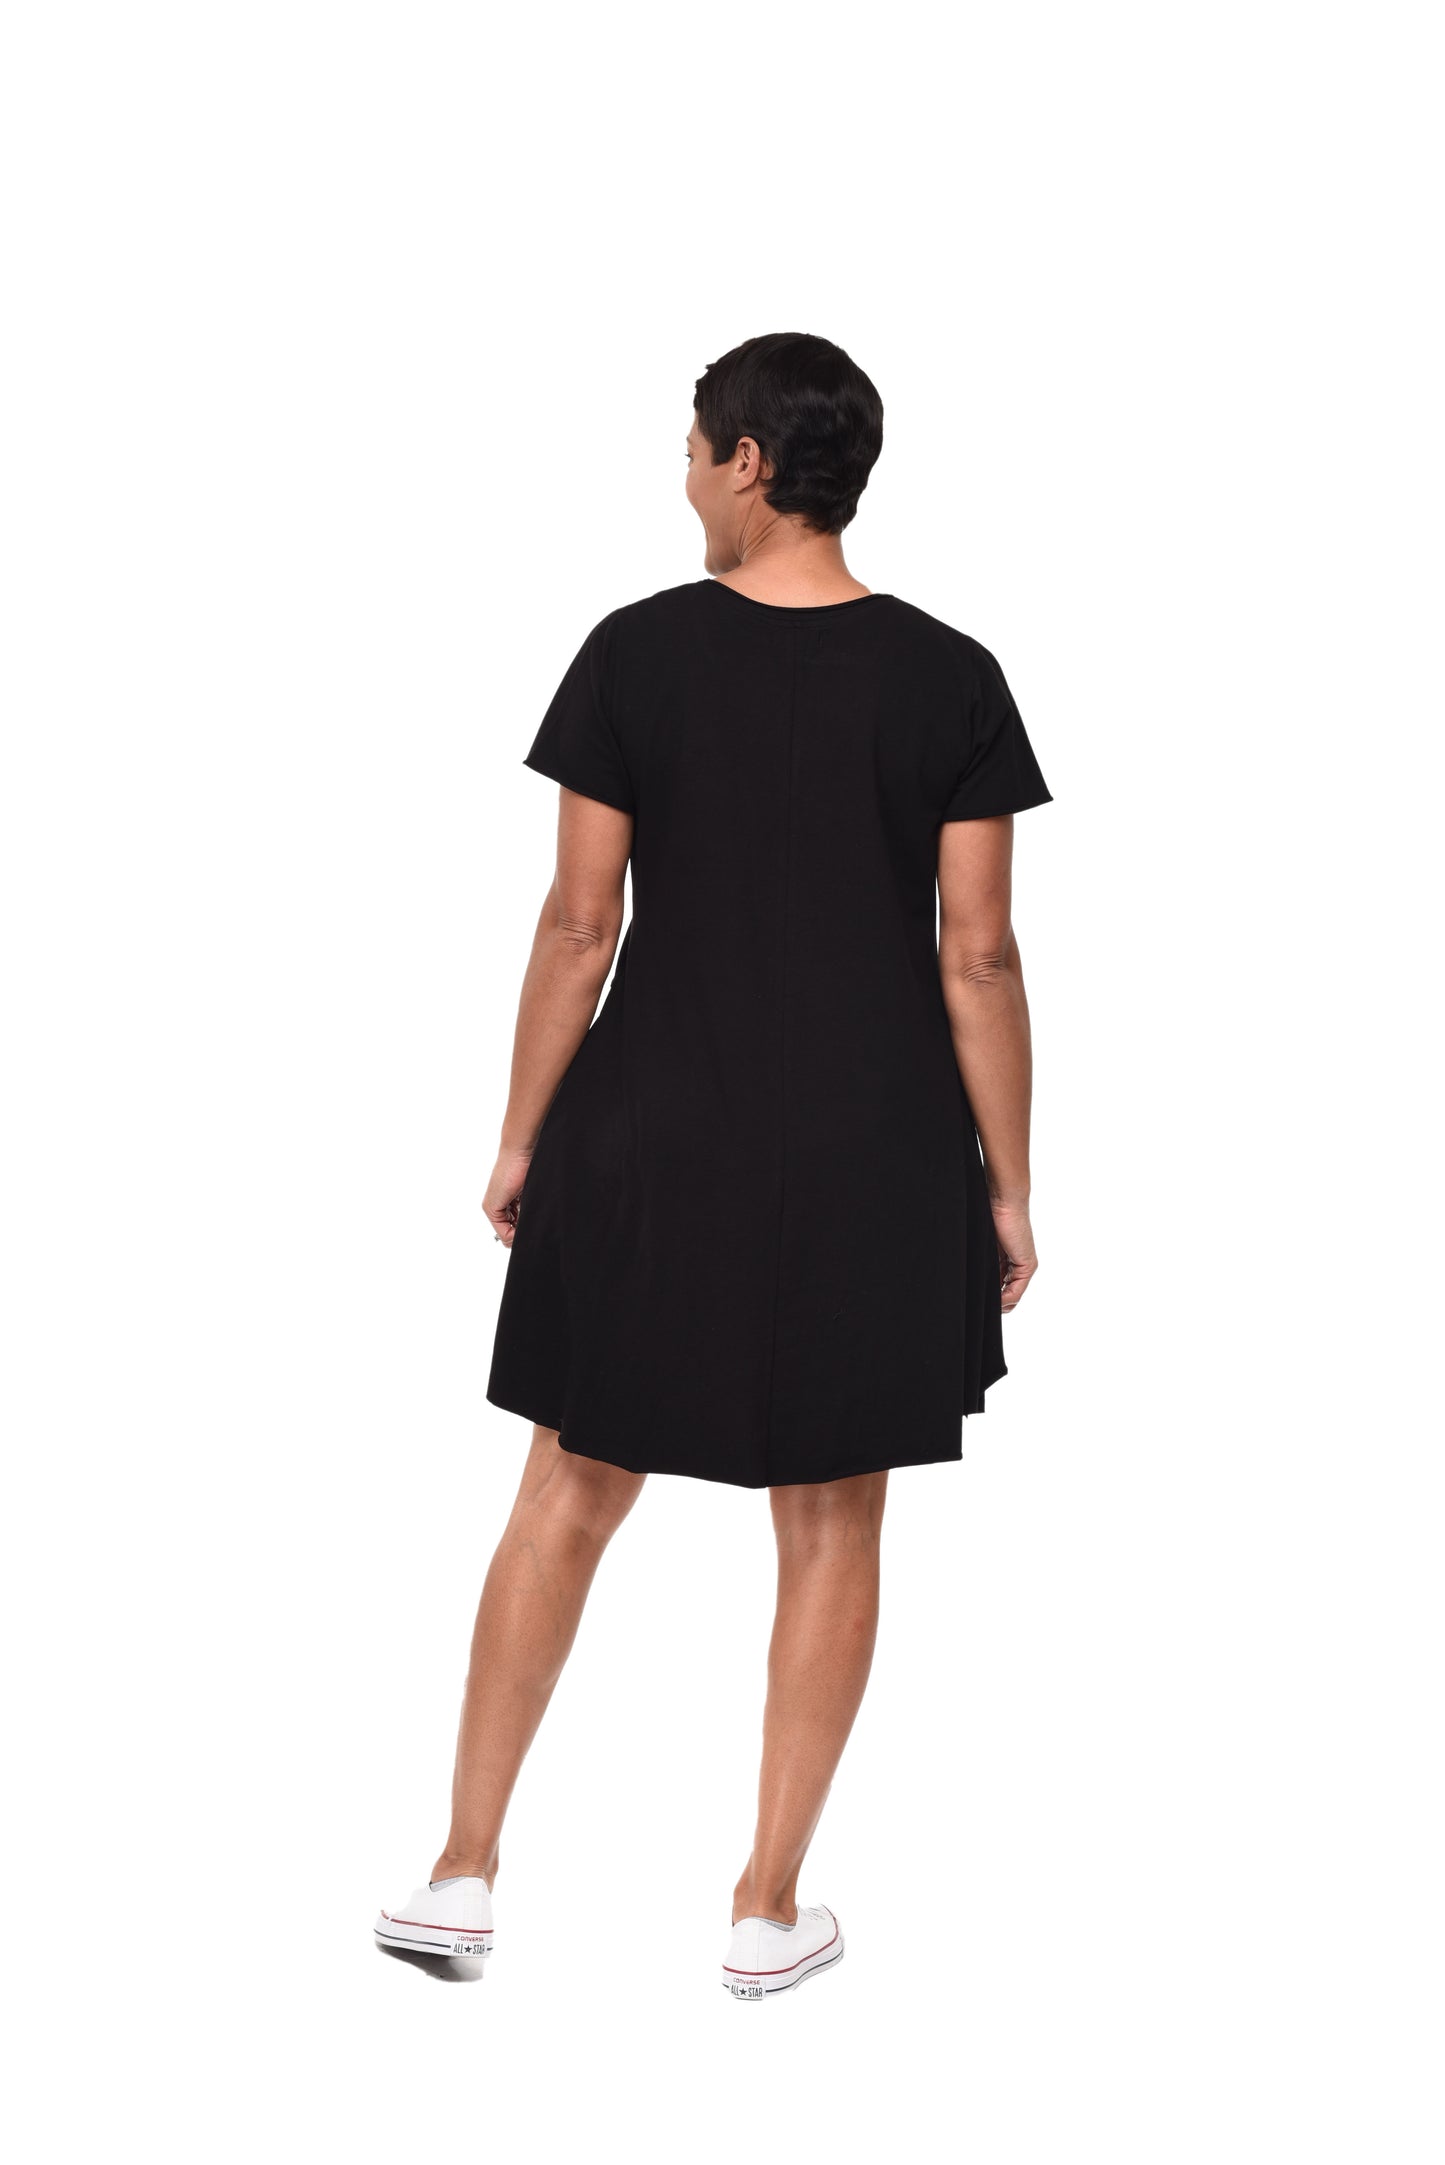 L155 Kendall Dress in Black*